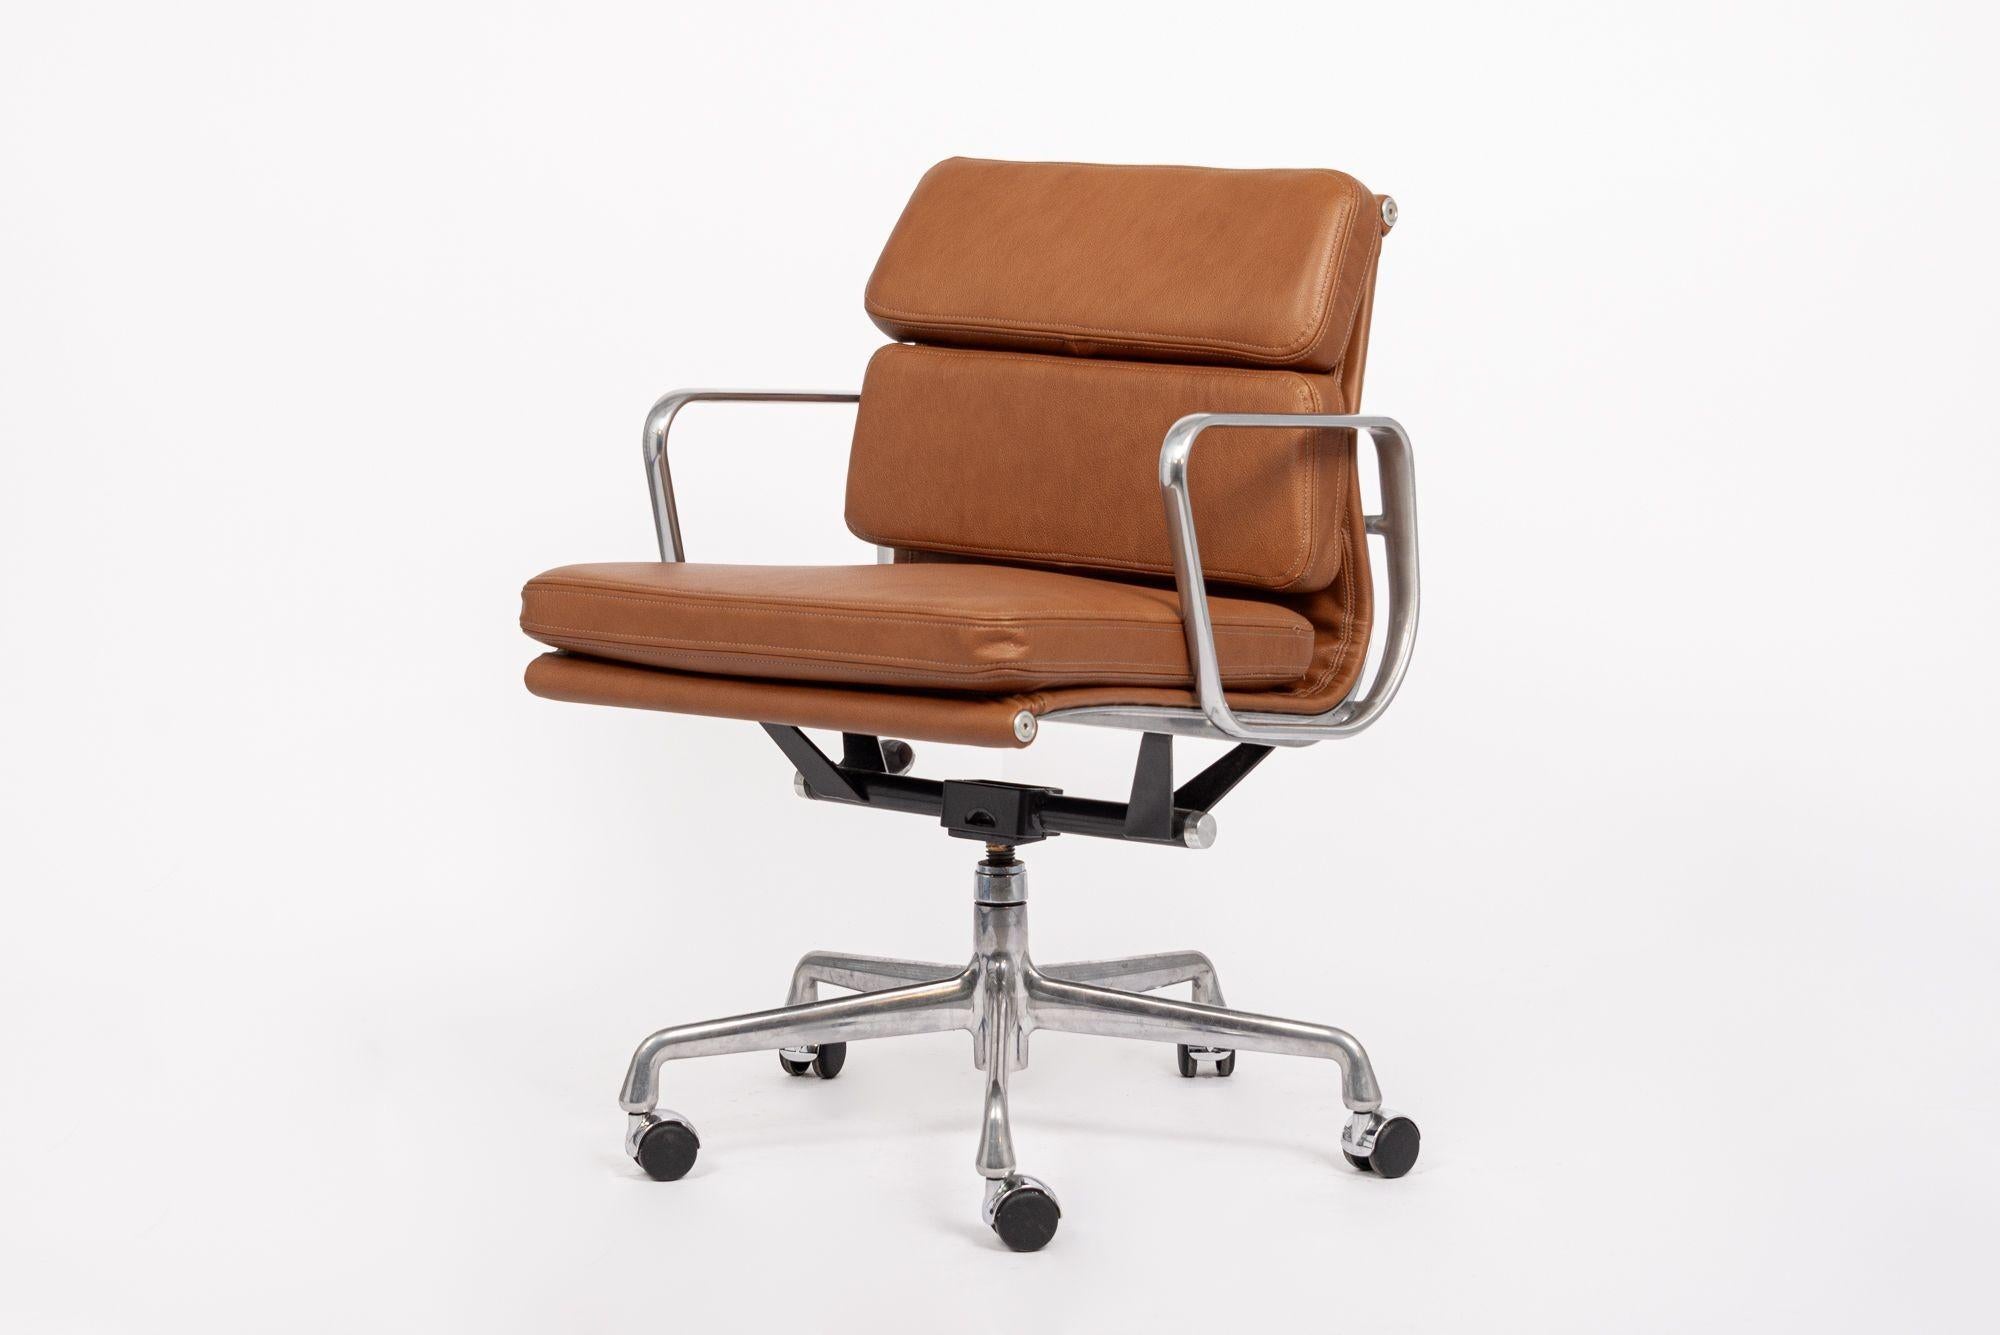 Cette authentique chaise de bureau en cuir marron Eames for Herman Miller Soft Pad Management Height de la Collection S a été fabriquée dans les années 2000. Cette chaise de bureau classique et moderne du milieu du siècle a été introduite pour la